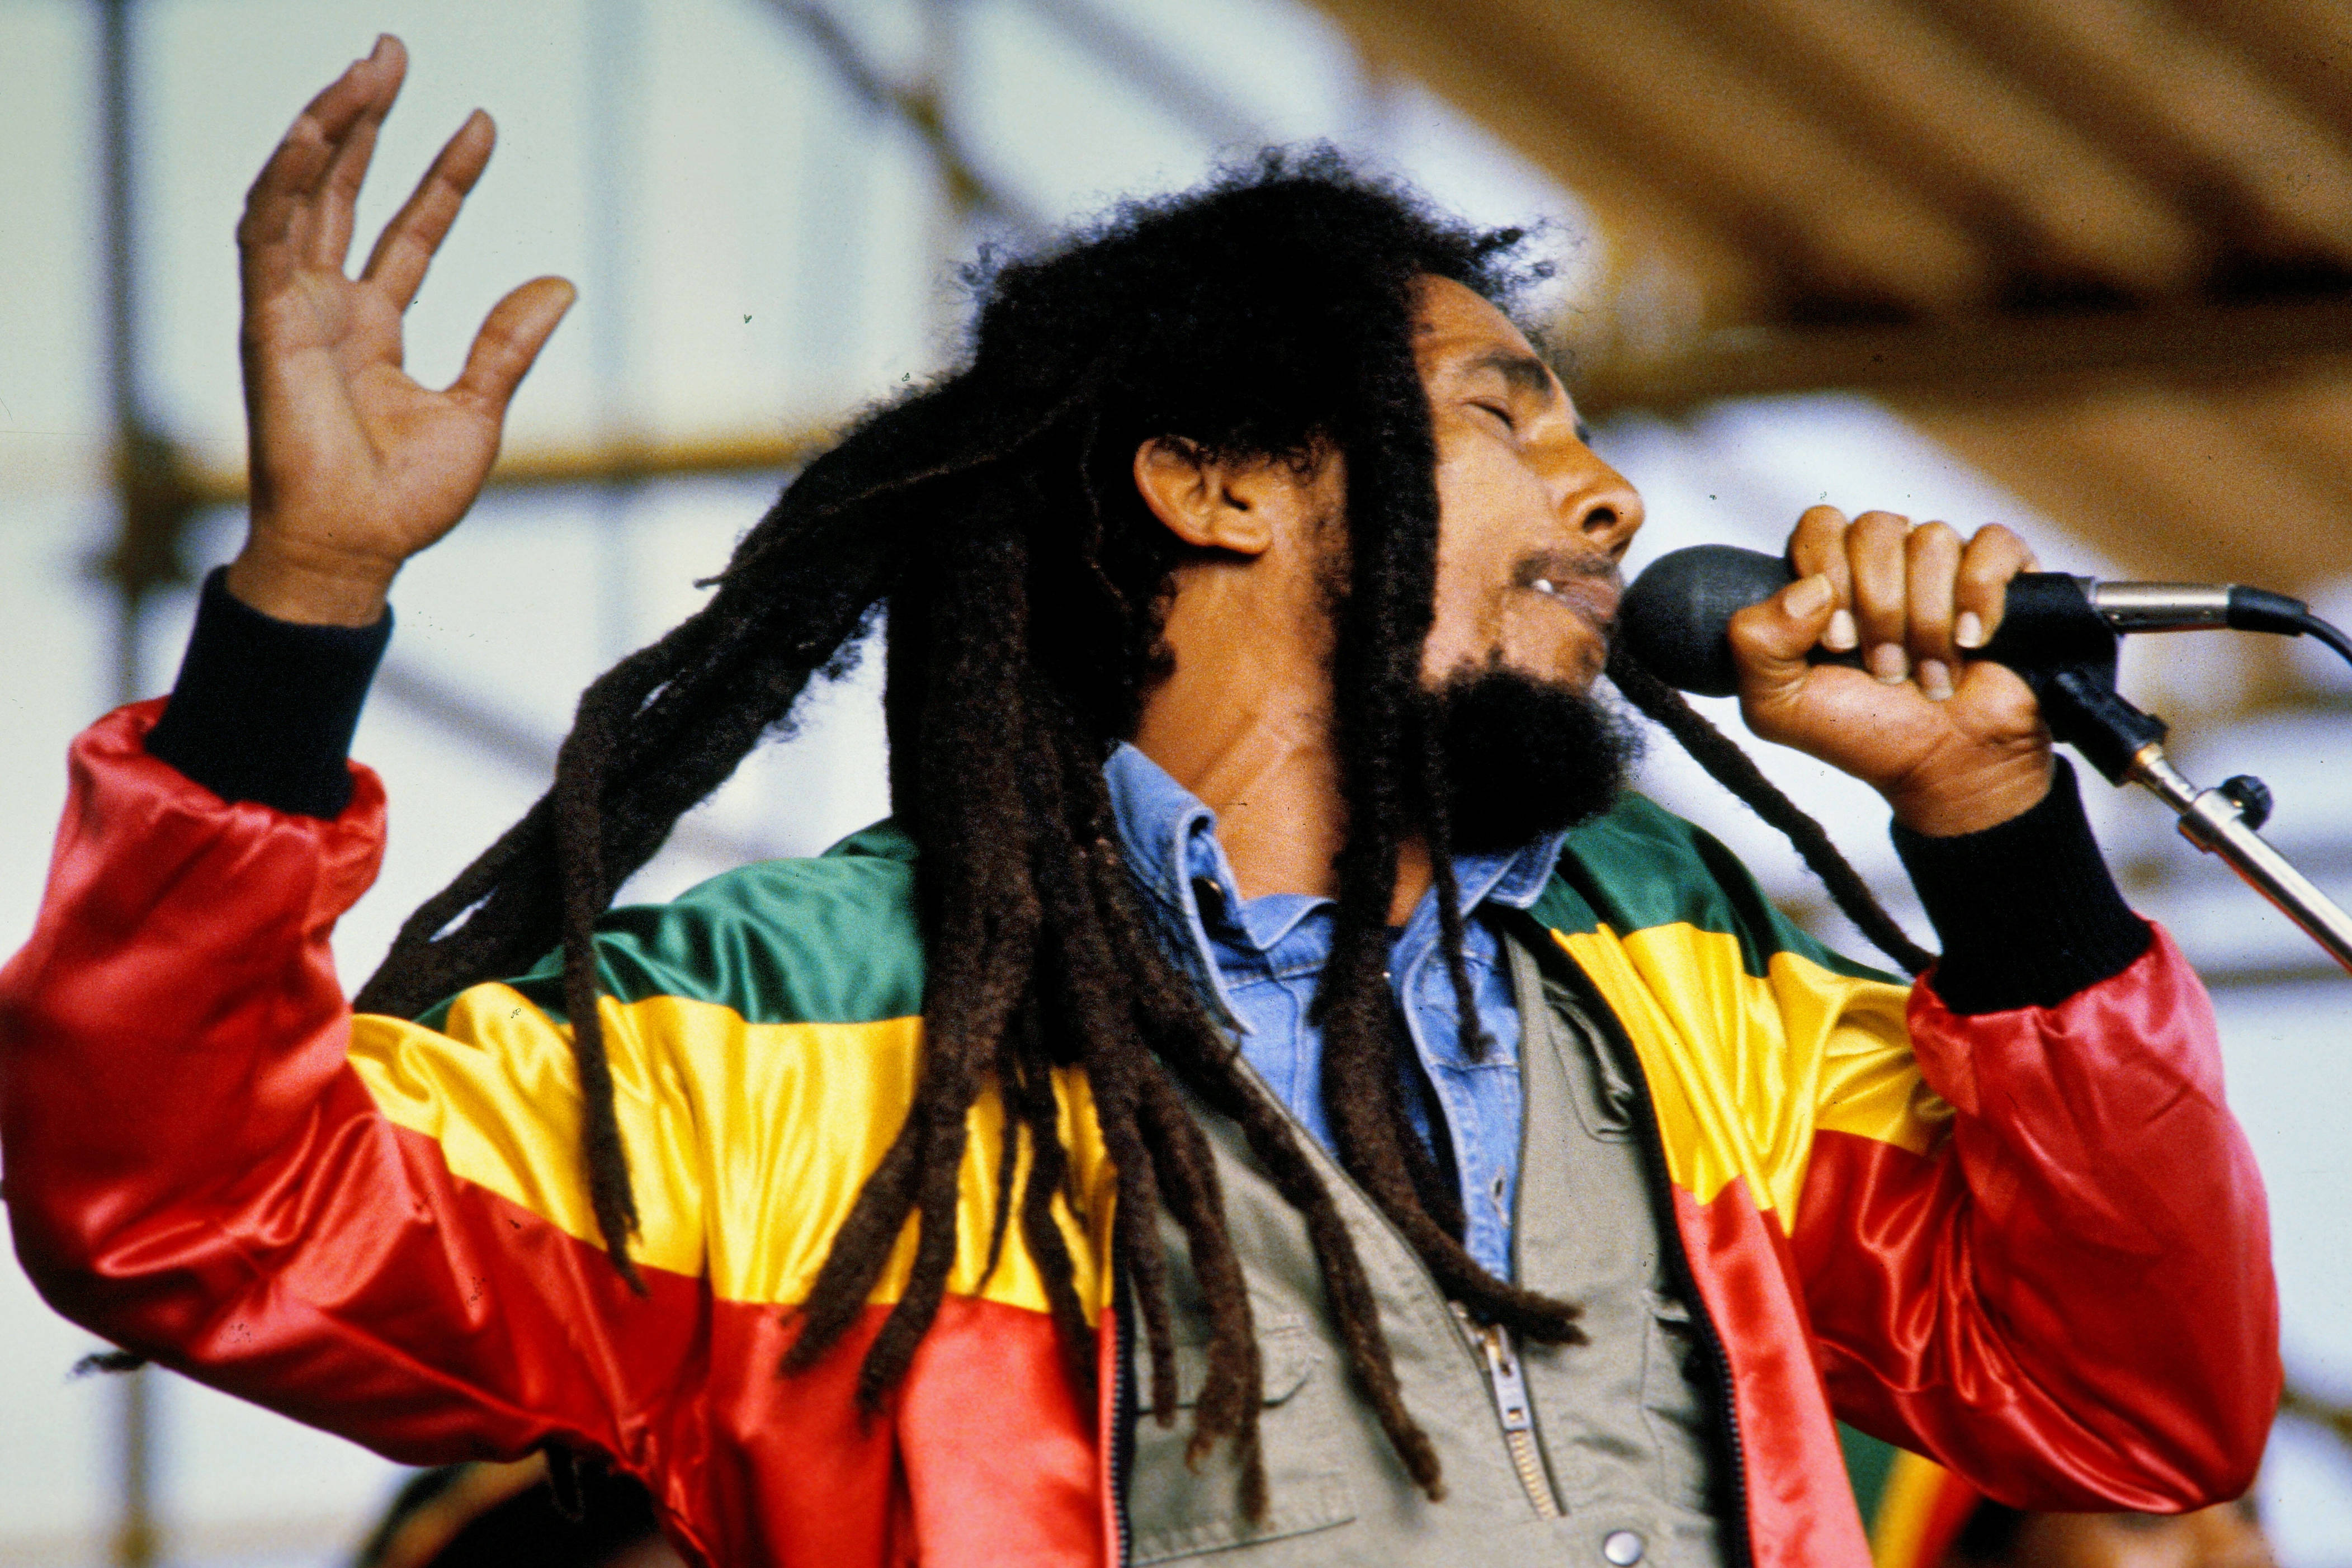 Nel 1981, il cantante Bob Marley morì senza testamento all'età di 36 anni, lasciando un patrimonio di 30 milioni di dollari. Bob Marley sapeva che sarebbe morto dopo che gli era stato diagnosticato un cancro nel 1977, ma aveva scelto di non scriverlo.